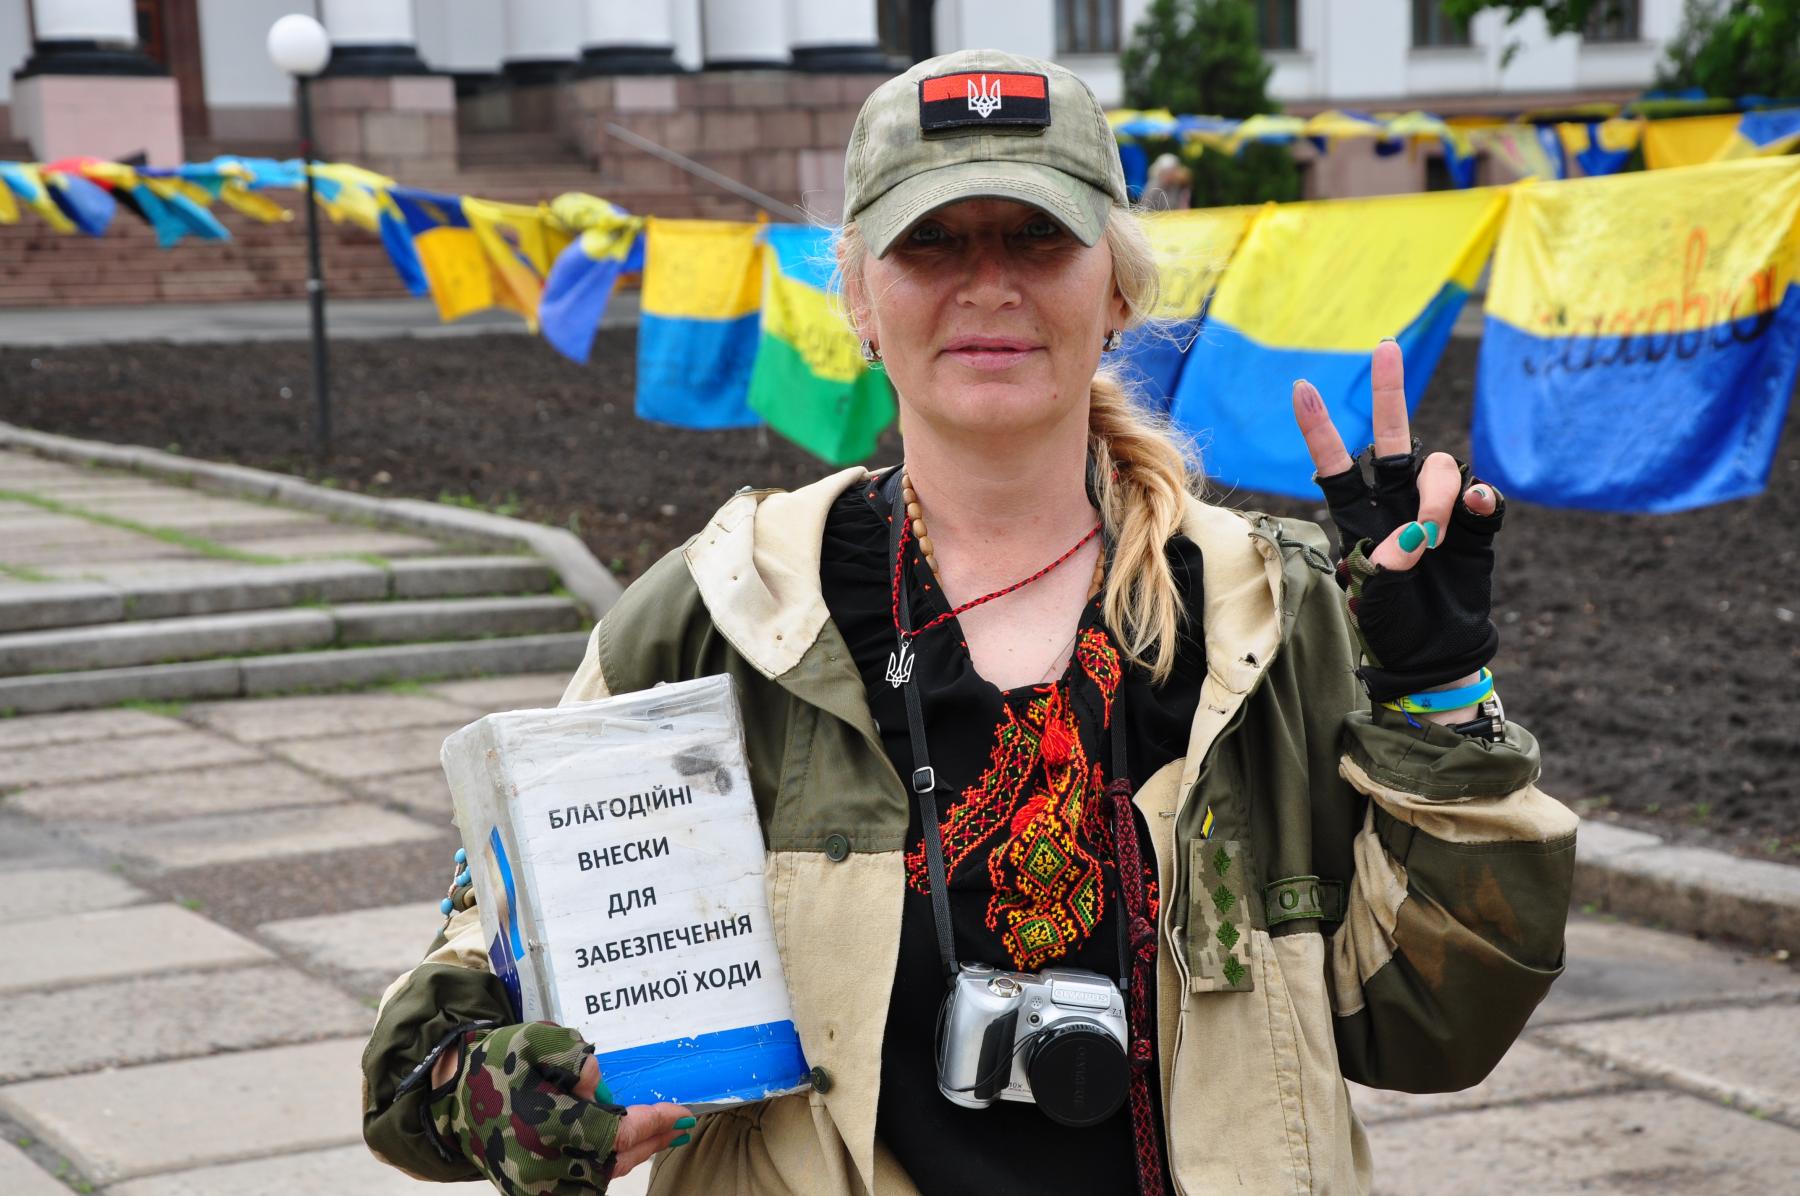 Организатор акции Екатерина Валевская, которая осенью 2014 года решила собрать сто флагов в честь героев Небесной Сотни